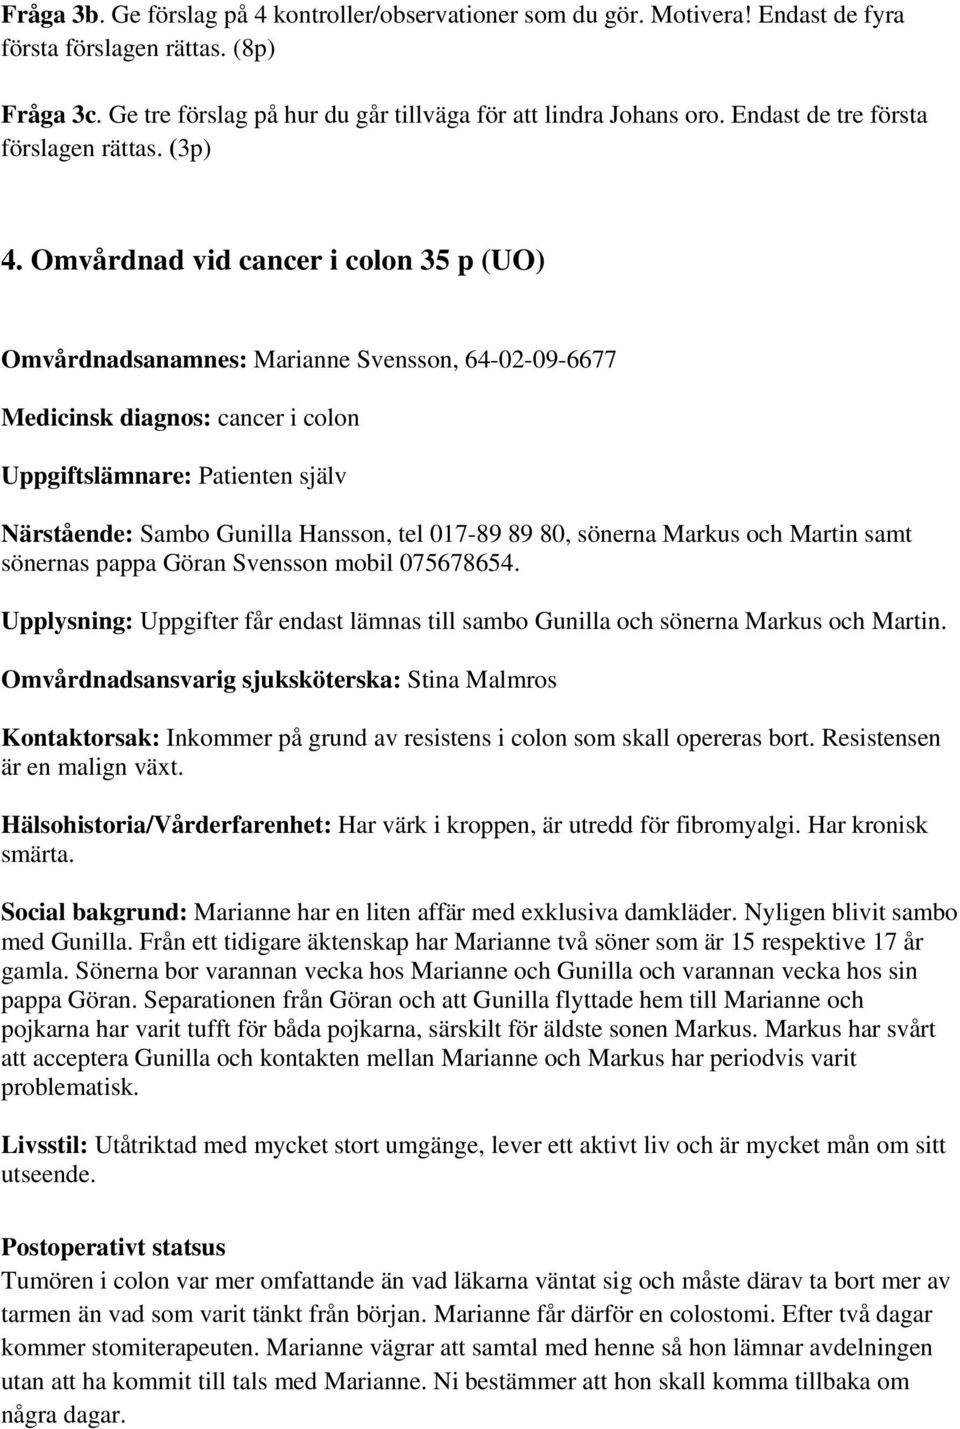 Omvårdnad vid cancer i colon 35 p (UO) Omvårdnadsanamnes: Marianne Svensson, 64-02-09-6677 Medicinsk diagnos: cancer i colon Uppgiftslämnare: Patienten själv Närstående: Sambo Gunilla Hansson, tel